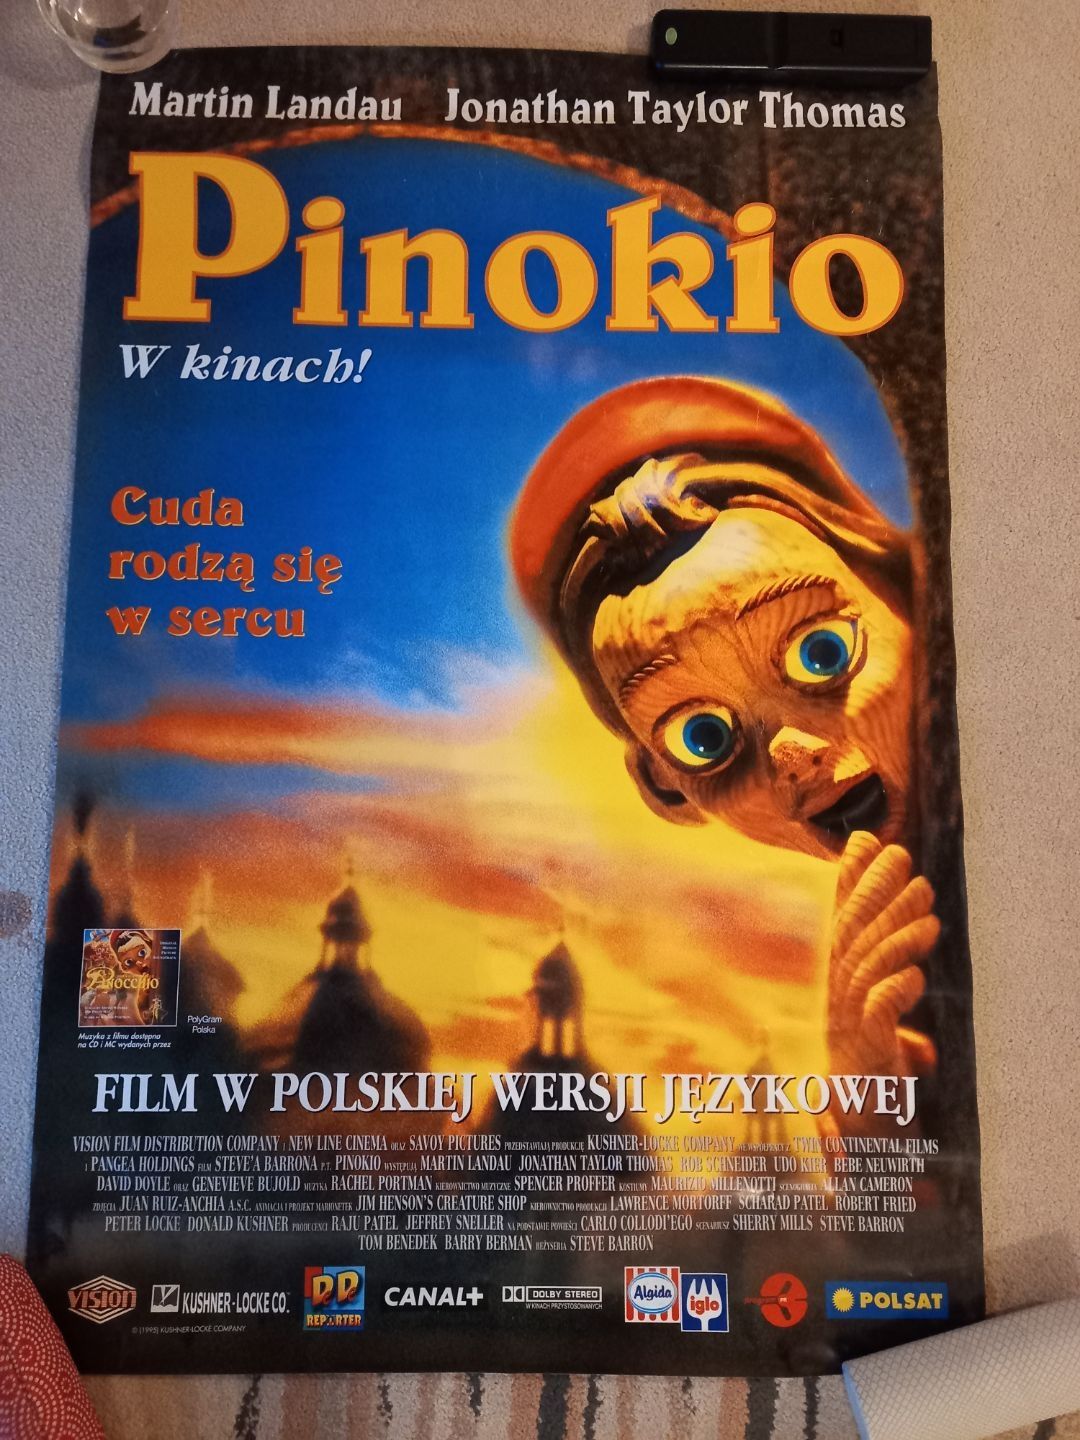 Plakat filmowy "Pinokio"